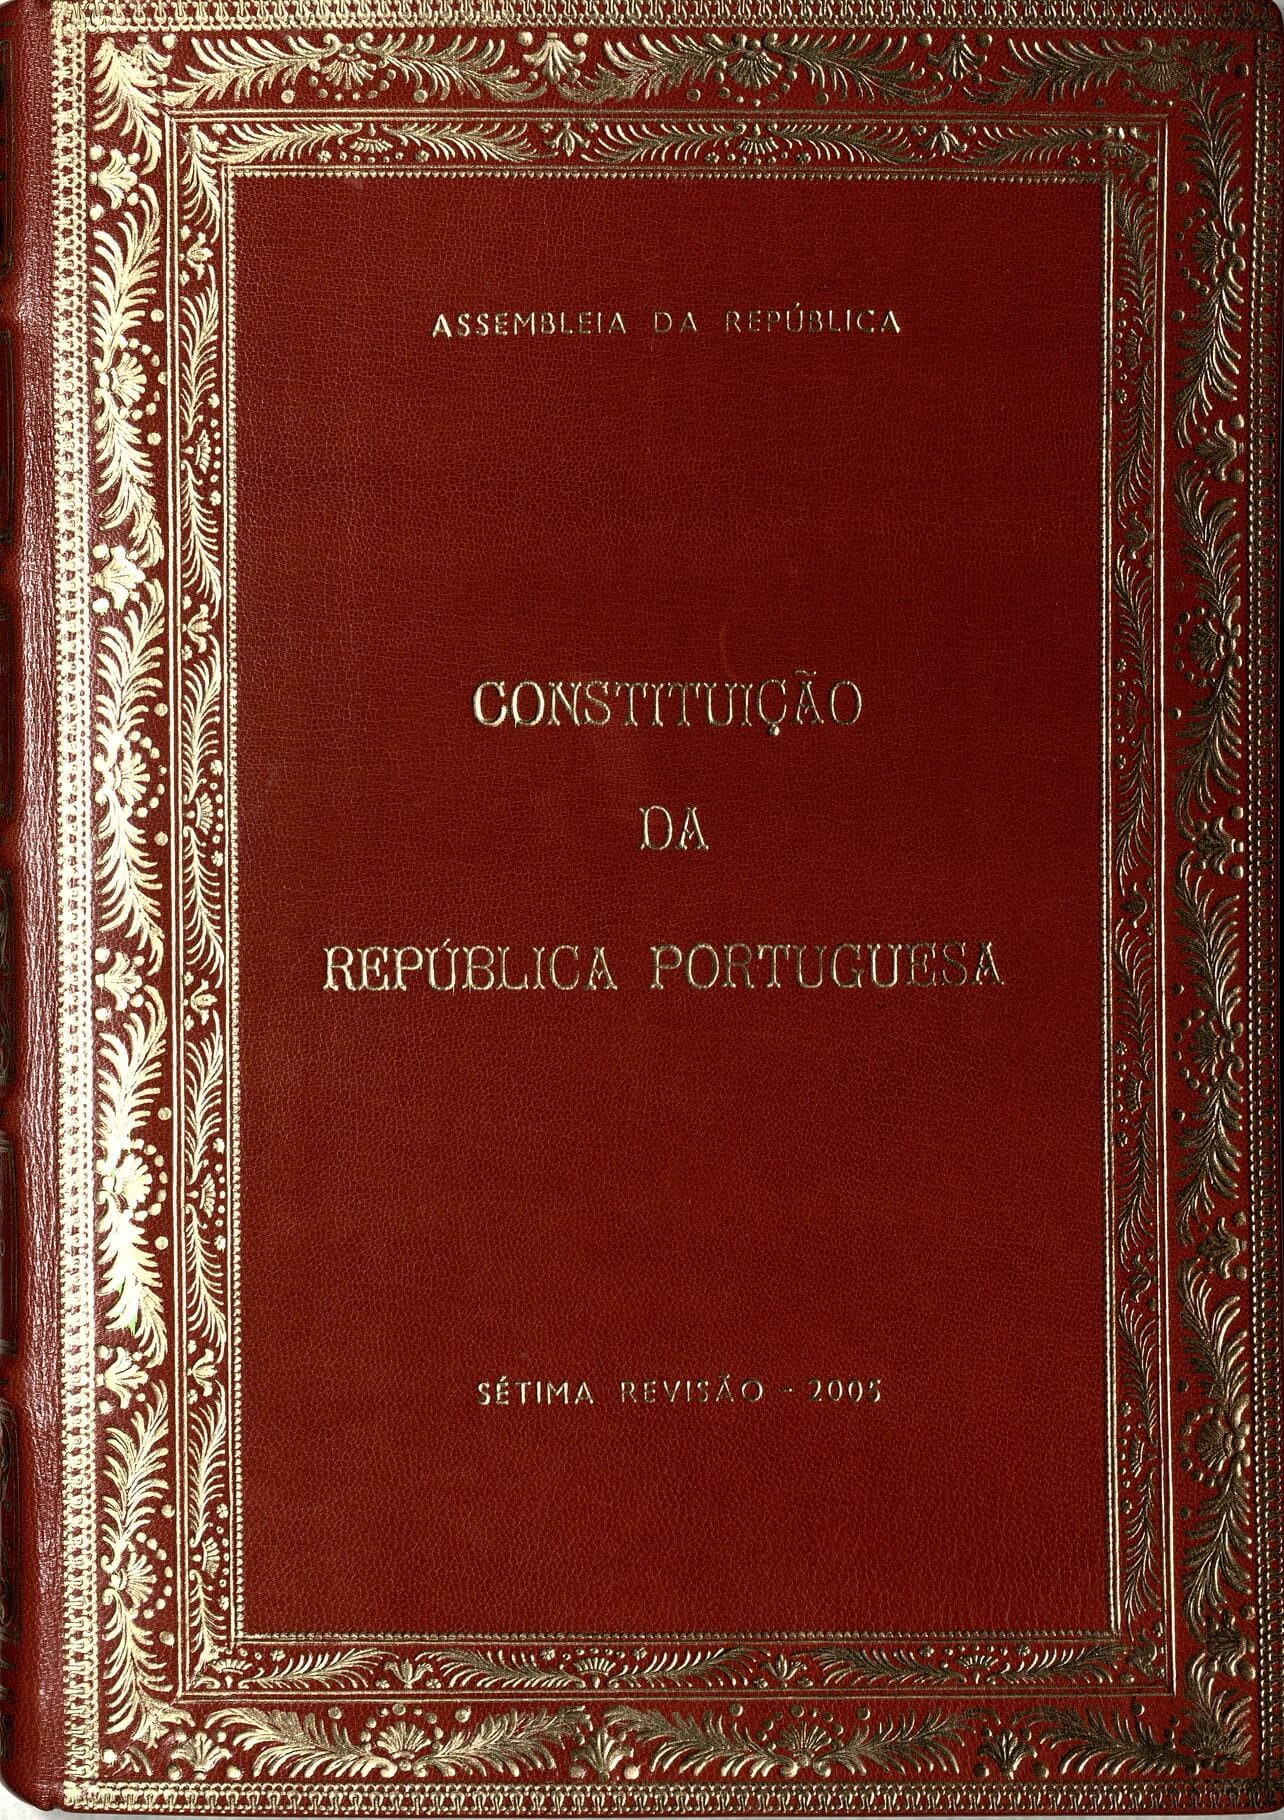 Capa da revisão constitucional de 2005